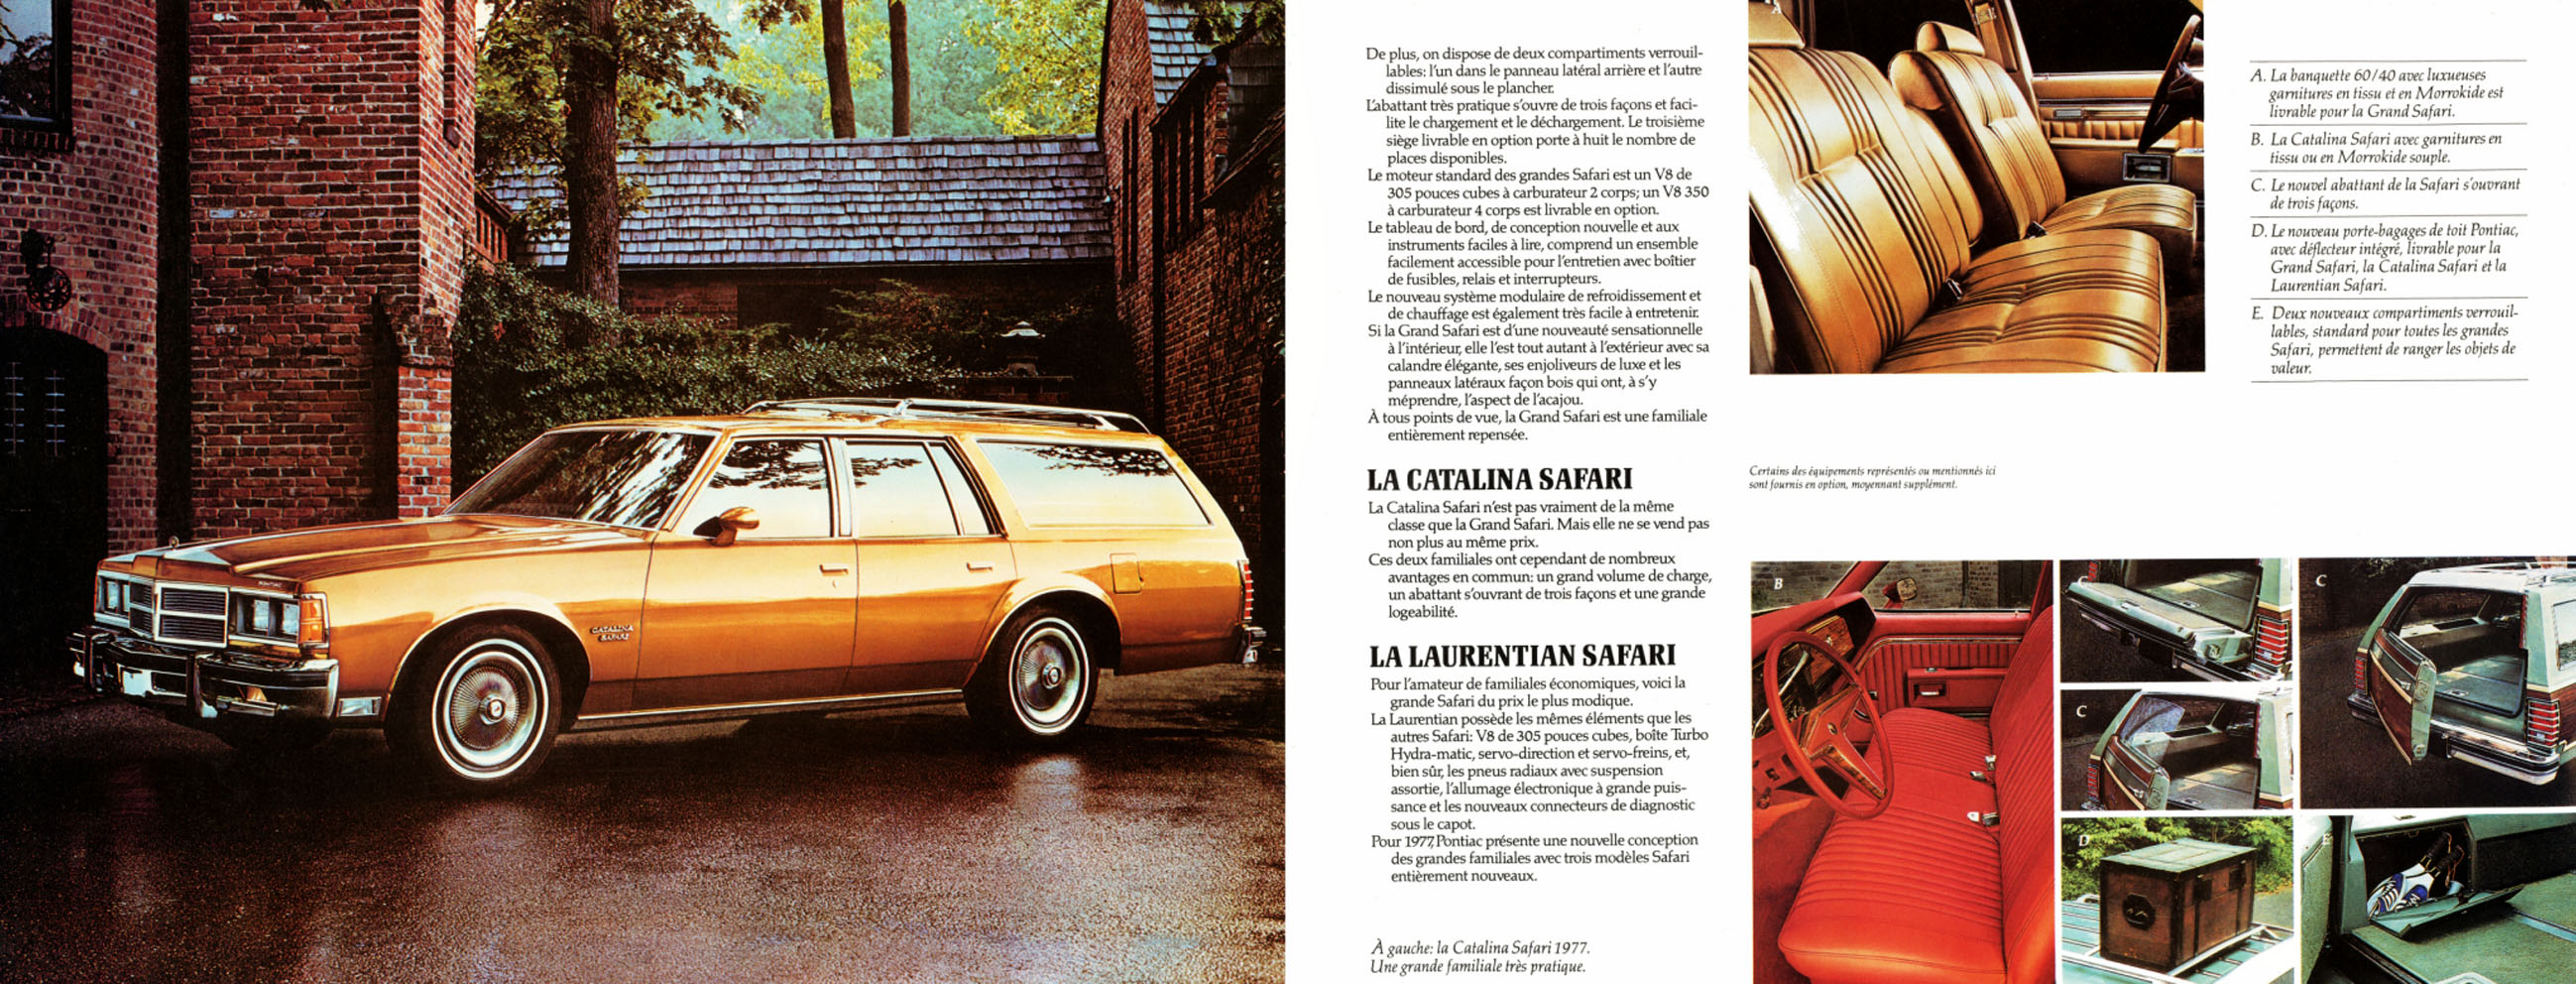 1977_Pontiac_Full_Size_Fr-12-13